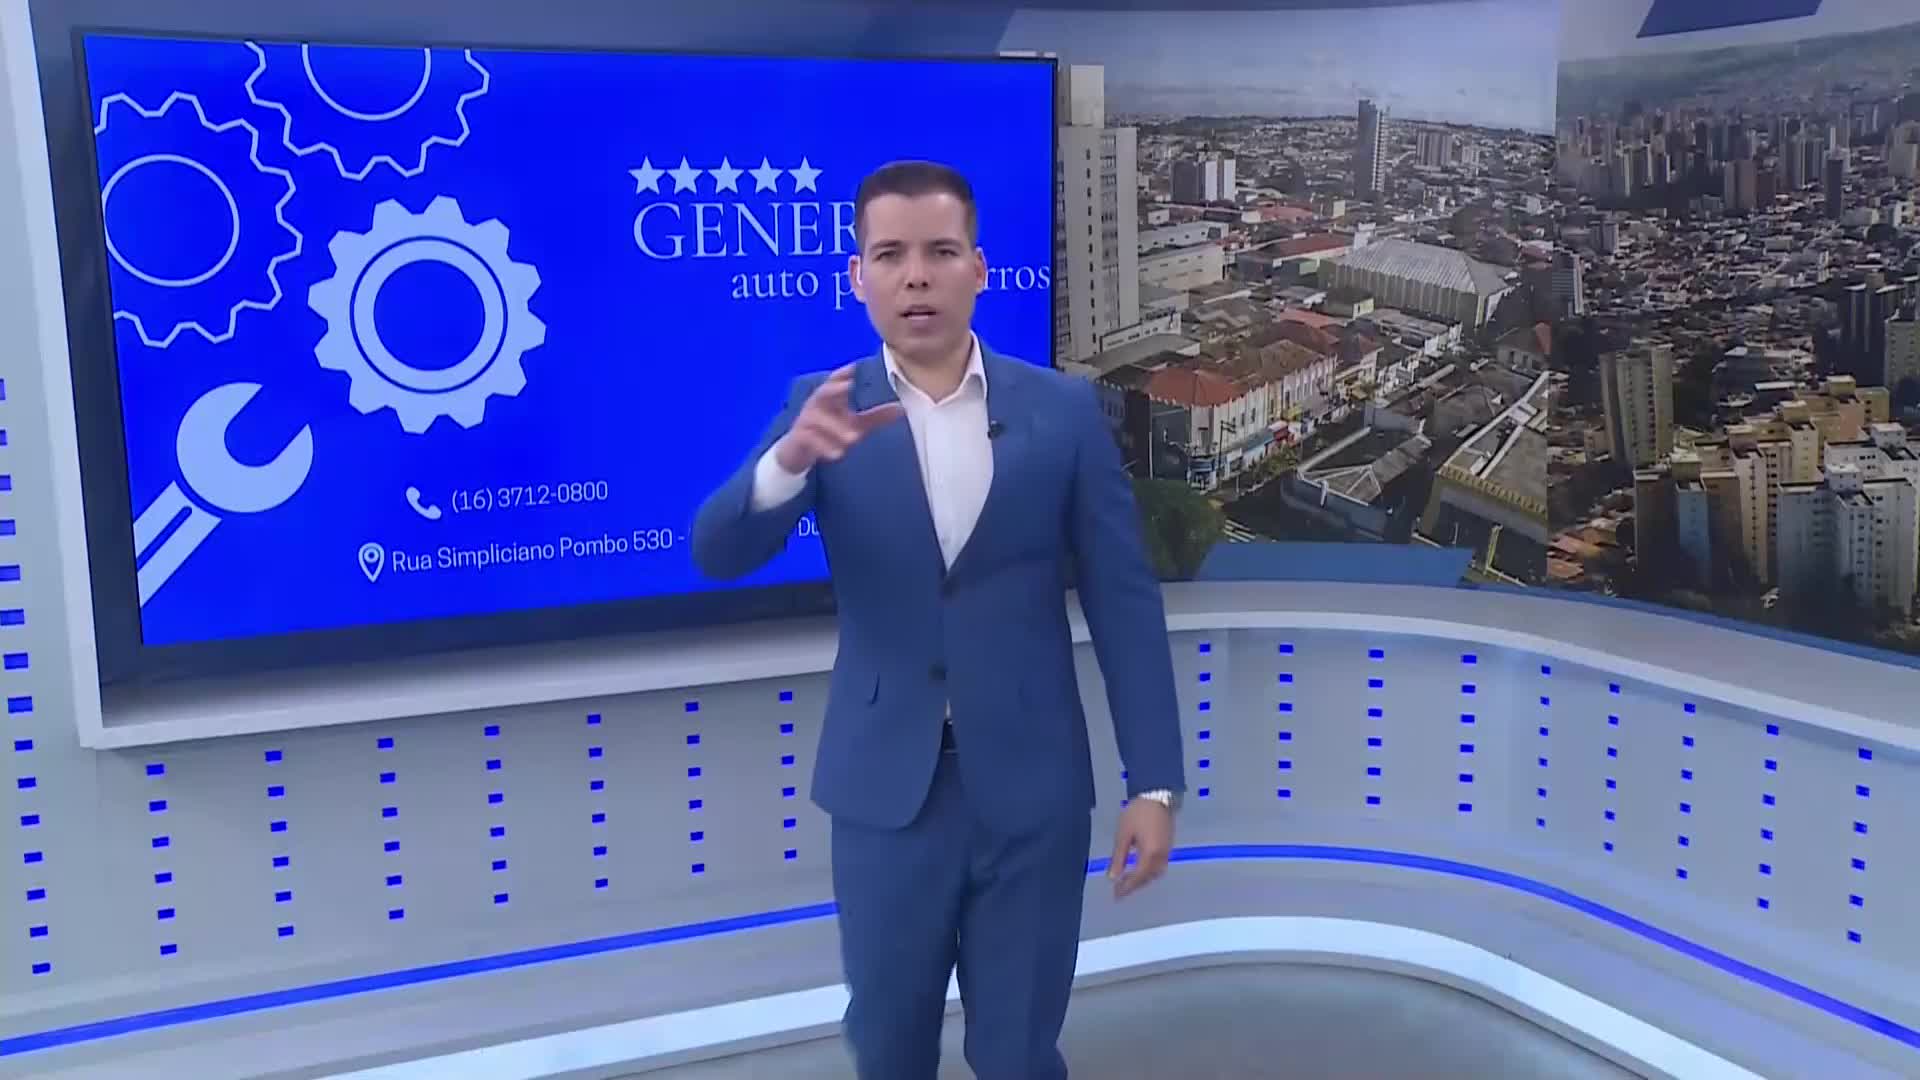 Vídeo: General Auto Peças - Balanço Geral - Exibido 02/06/2023